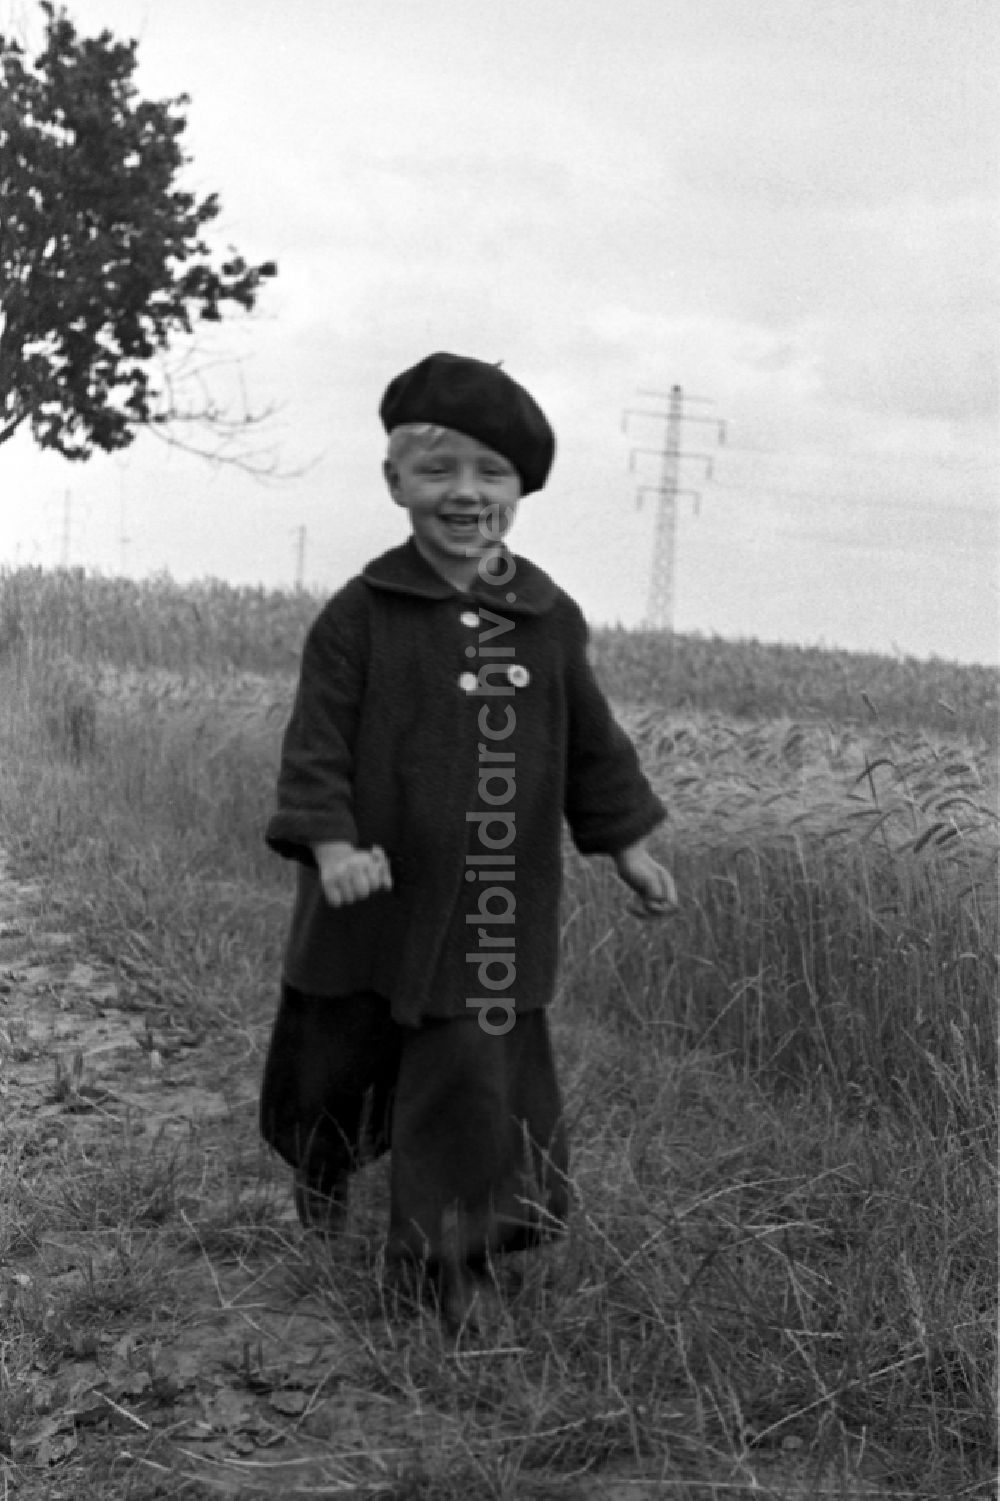 DDR-Bildarchiv: Merseburg - Kleines Kind in Pumphosen und mit Baskenmütze in Merseburg in Sachsen-Anhalt in der DDR